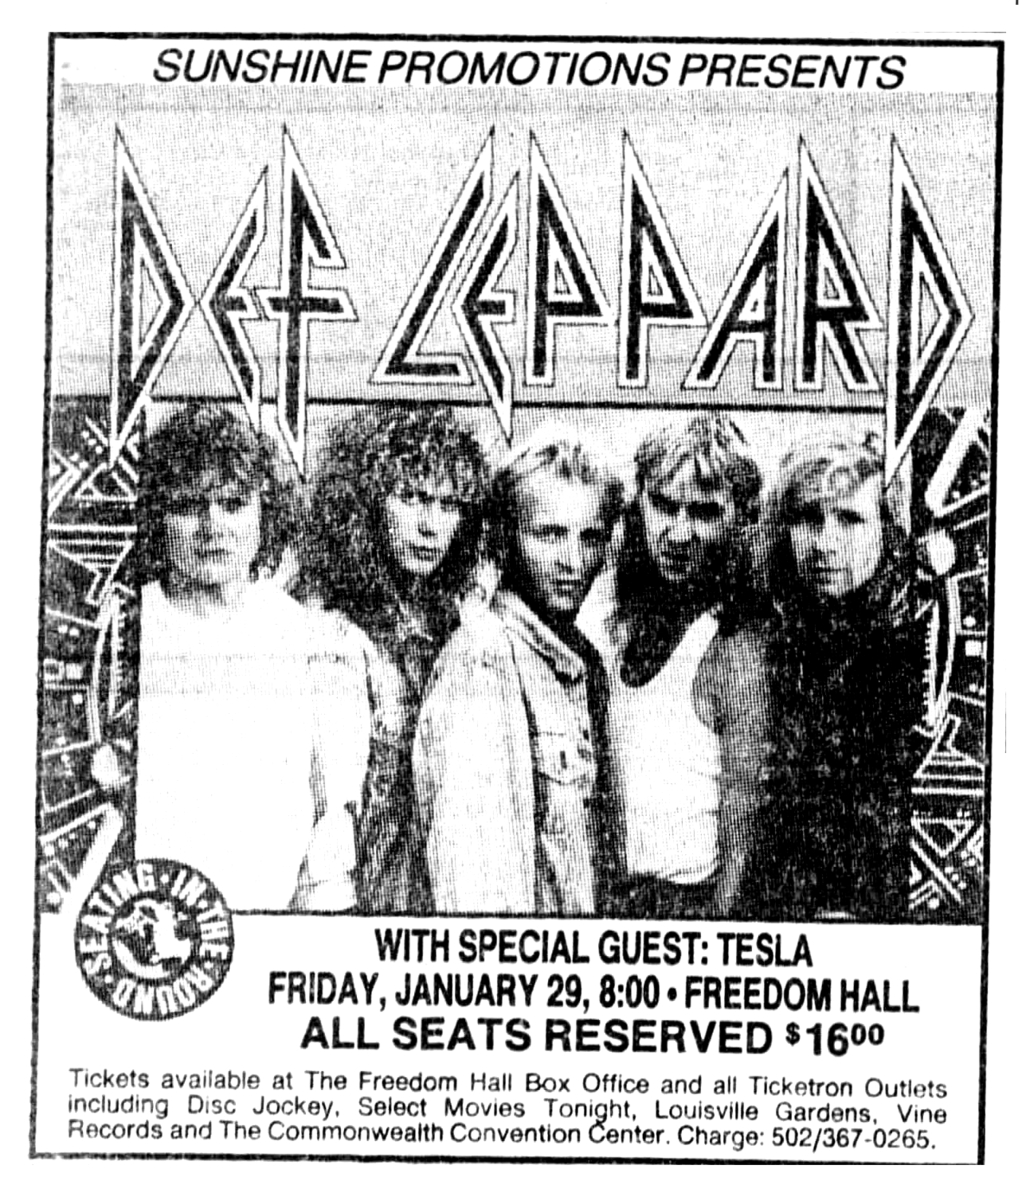 def leppard tour dates 1988